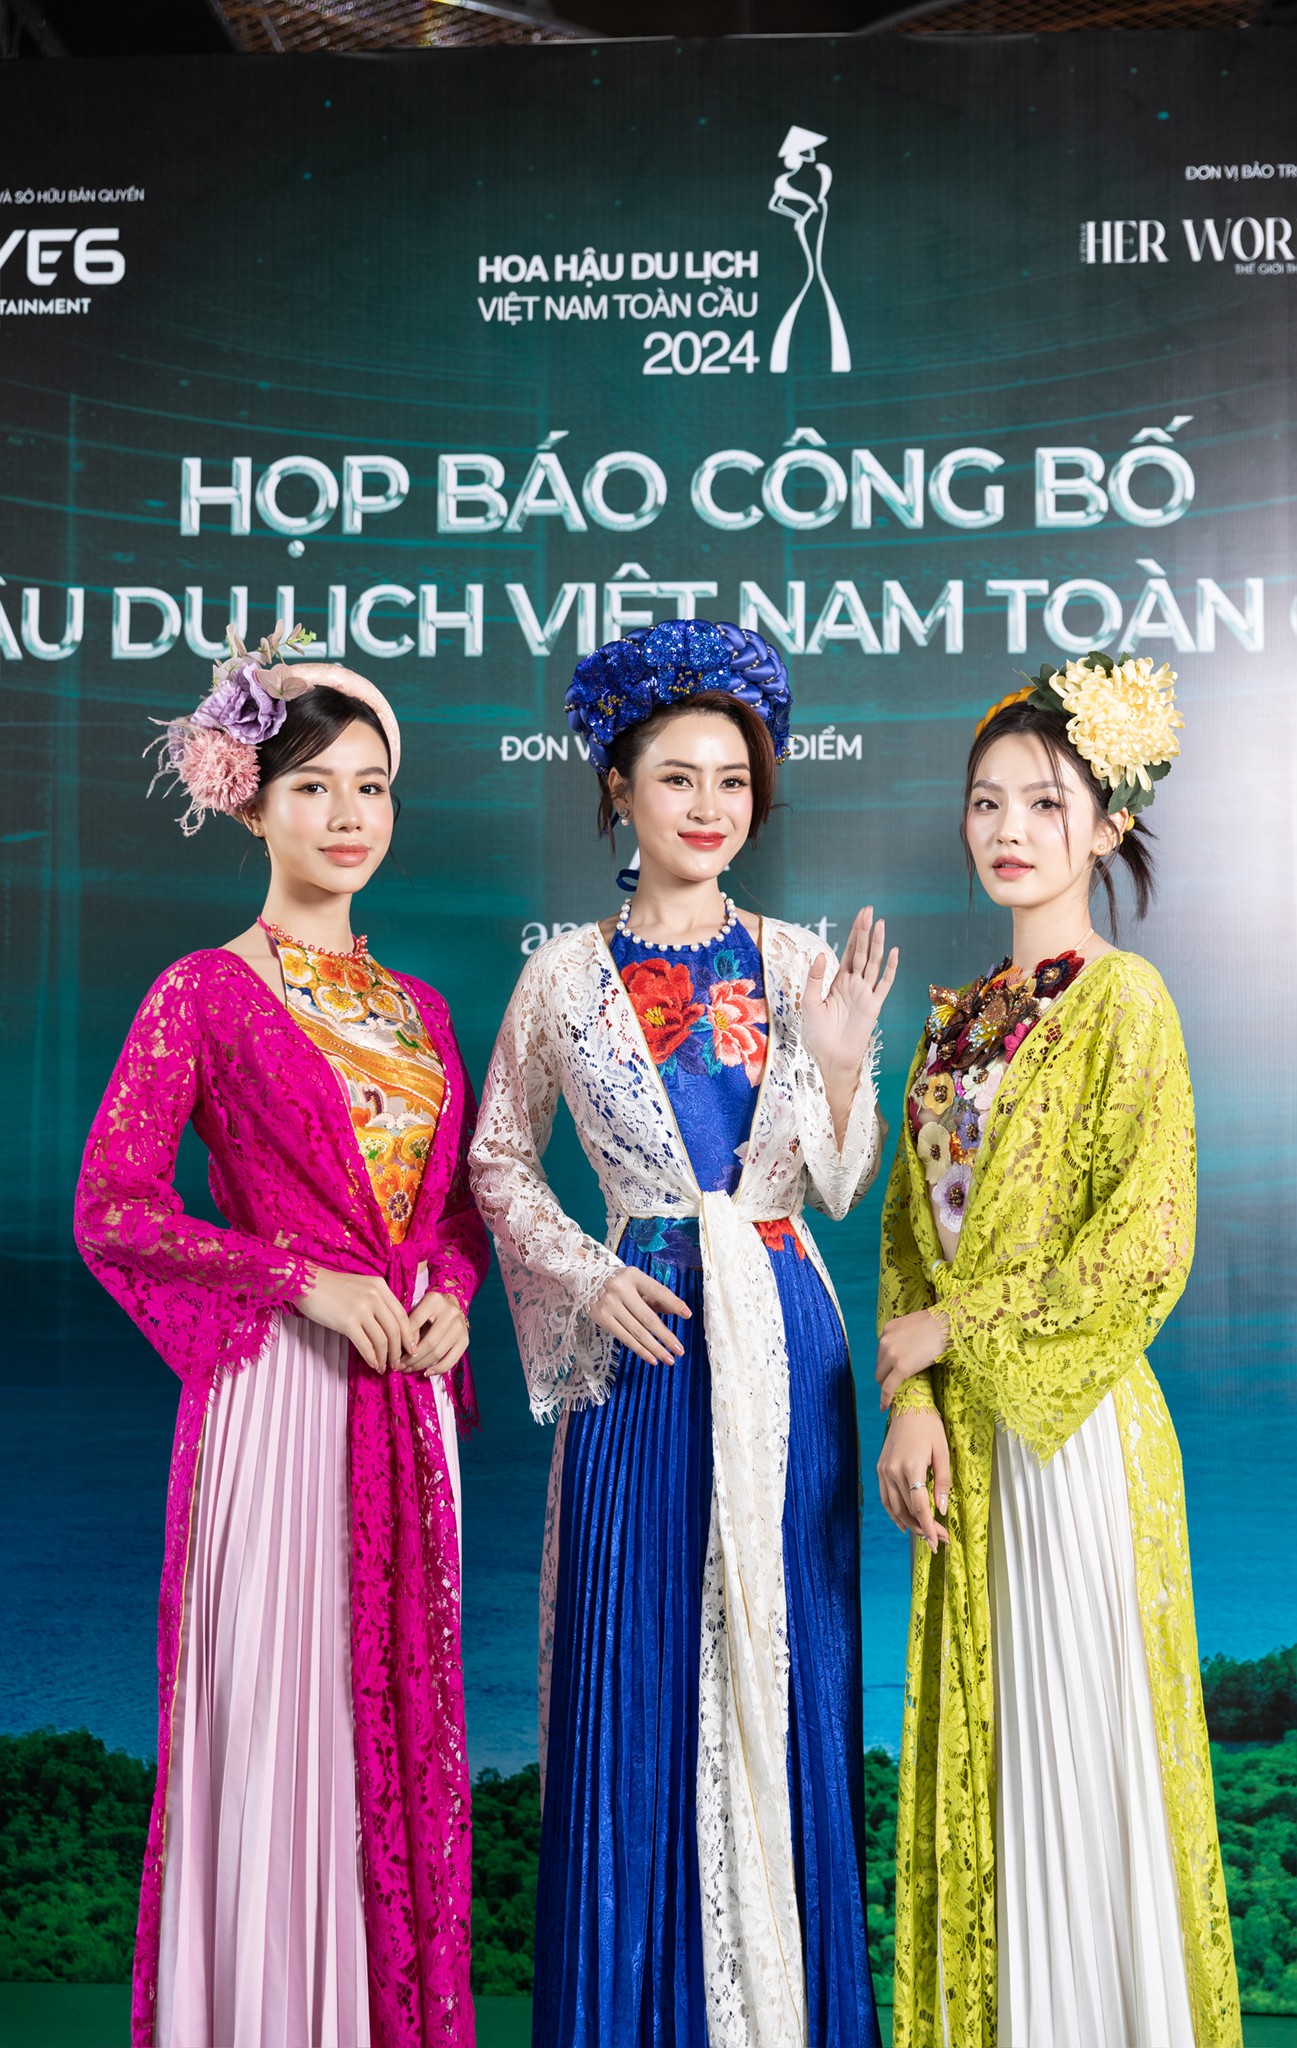 Hoa hậu Du lịch Việt Nam Toàn cầu 2024 với sứ mệnh phát triển du lịch